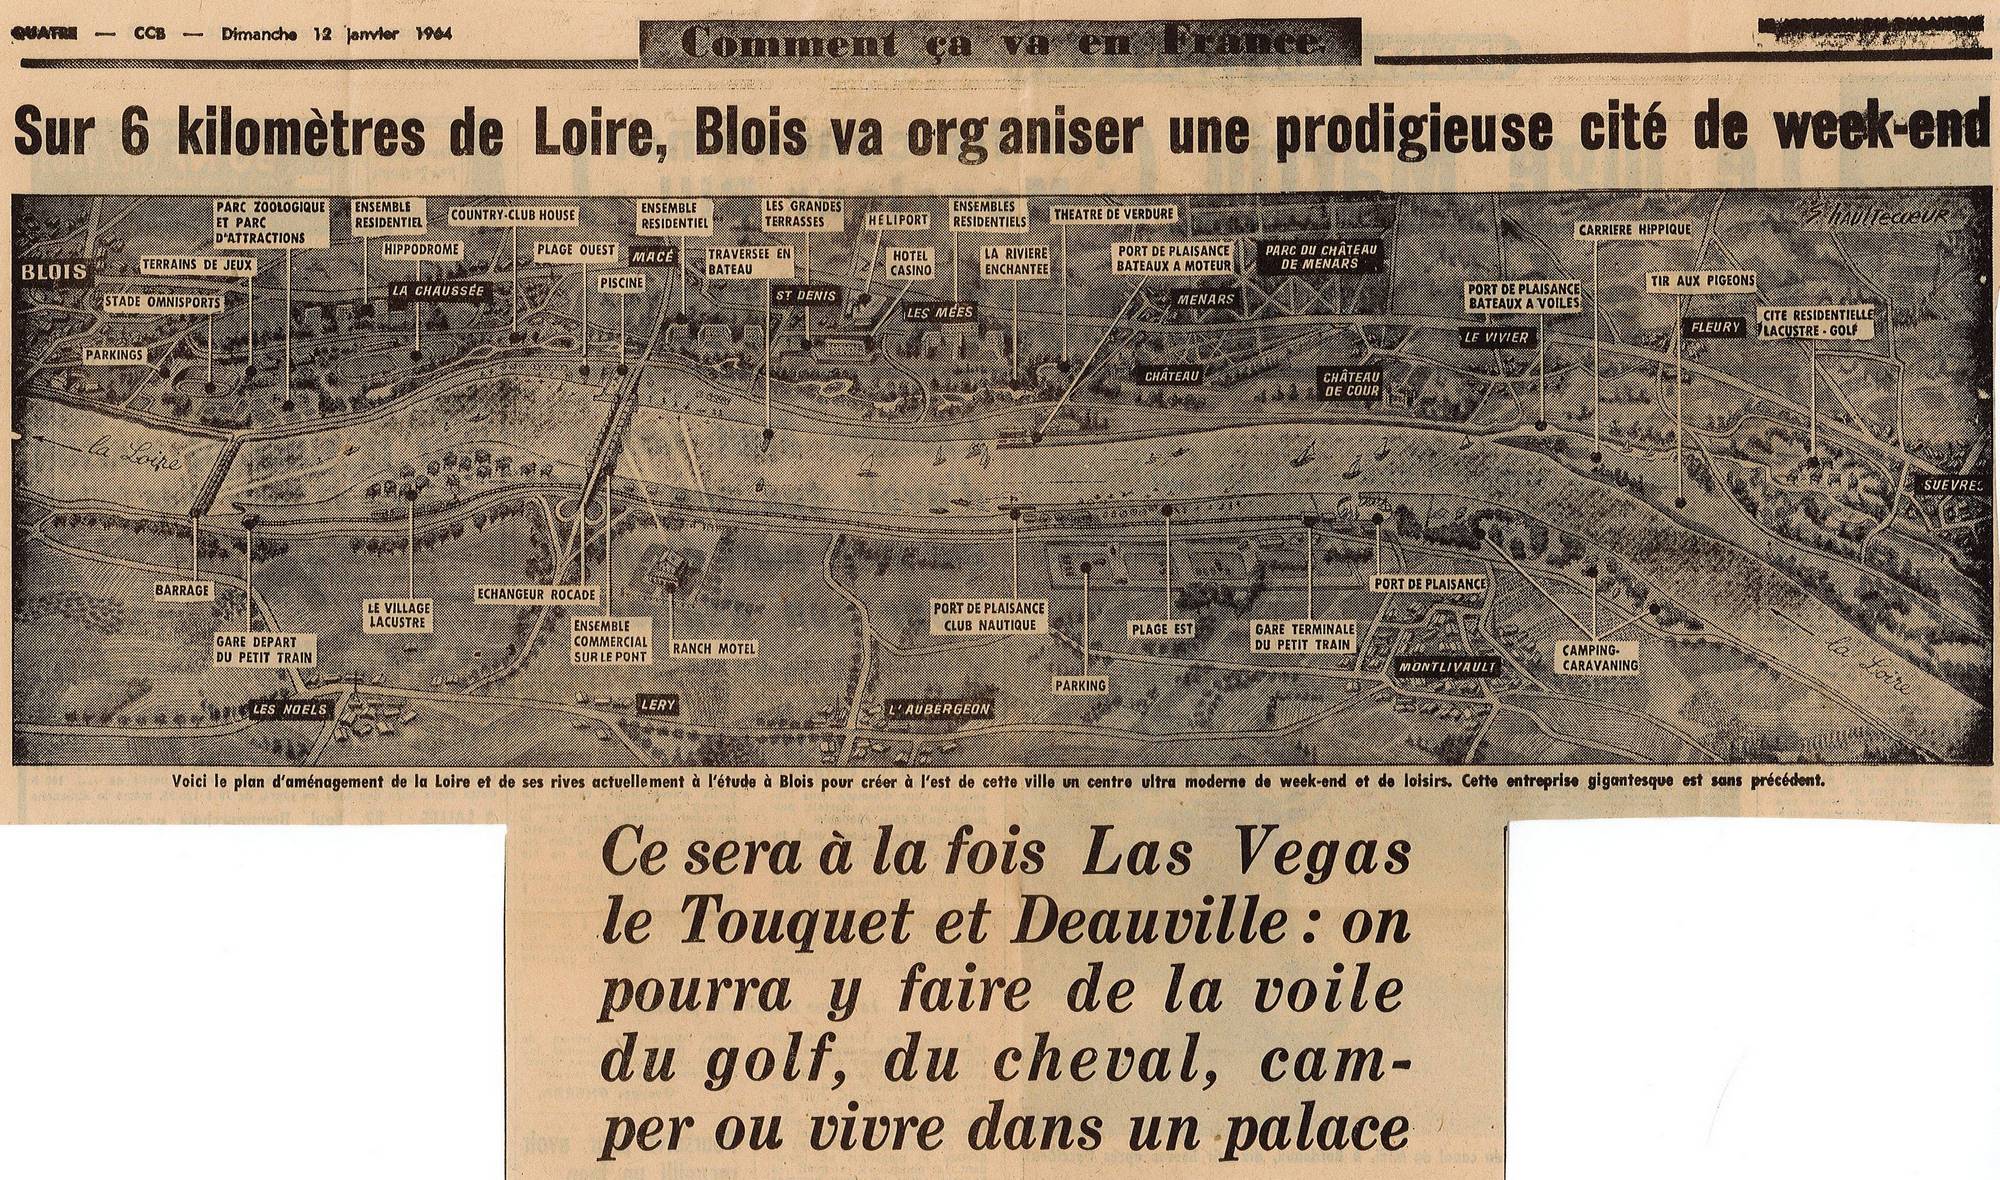  Le Journal du Dimanche du 12 janvier 1964 / Archives municipales de Blois, nc.